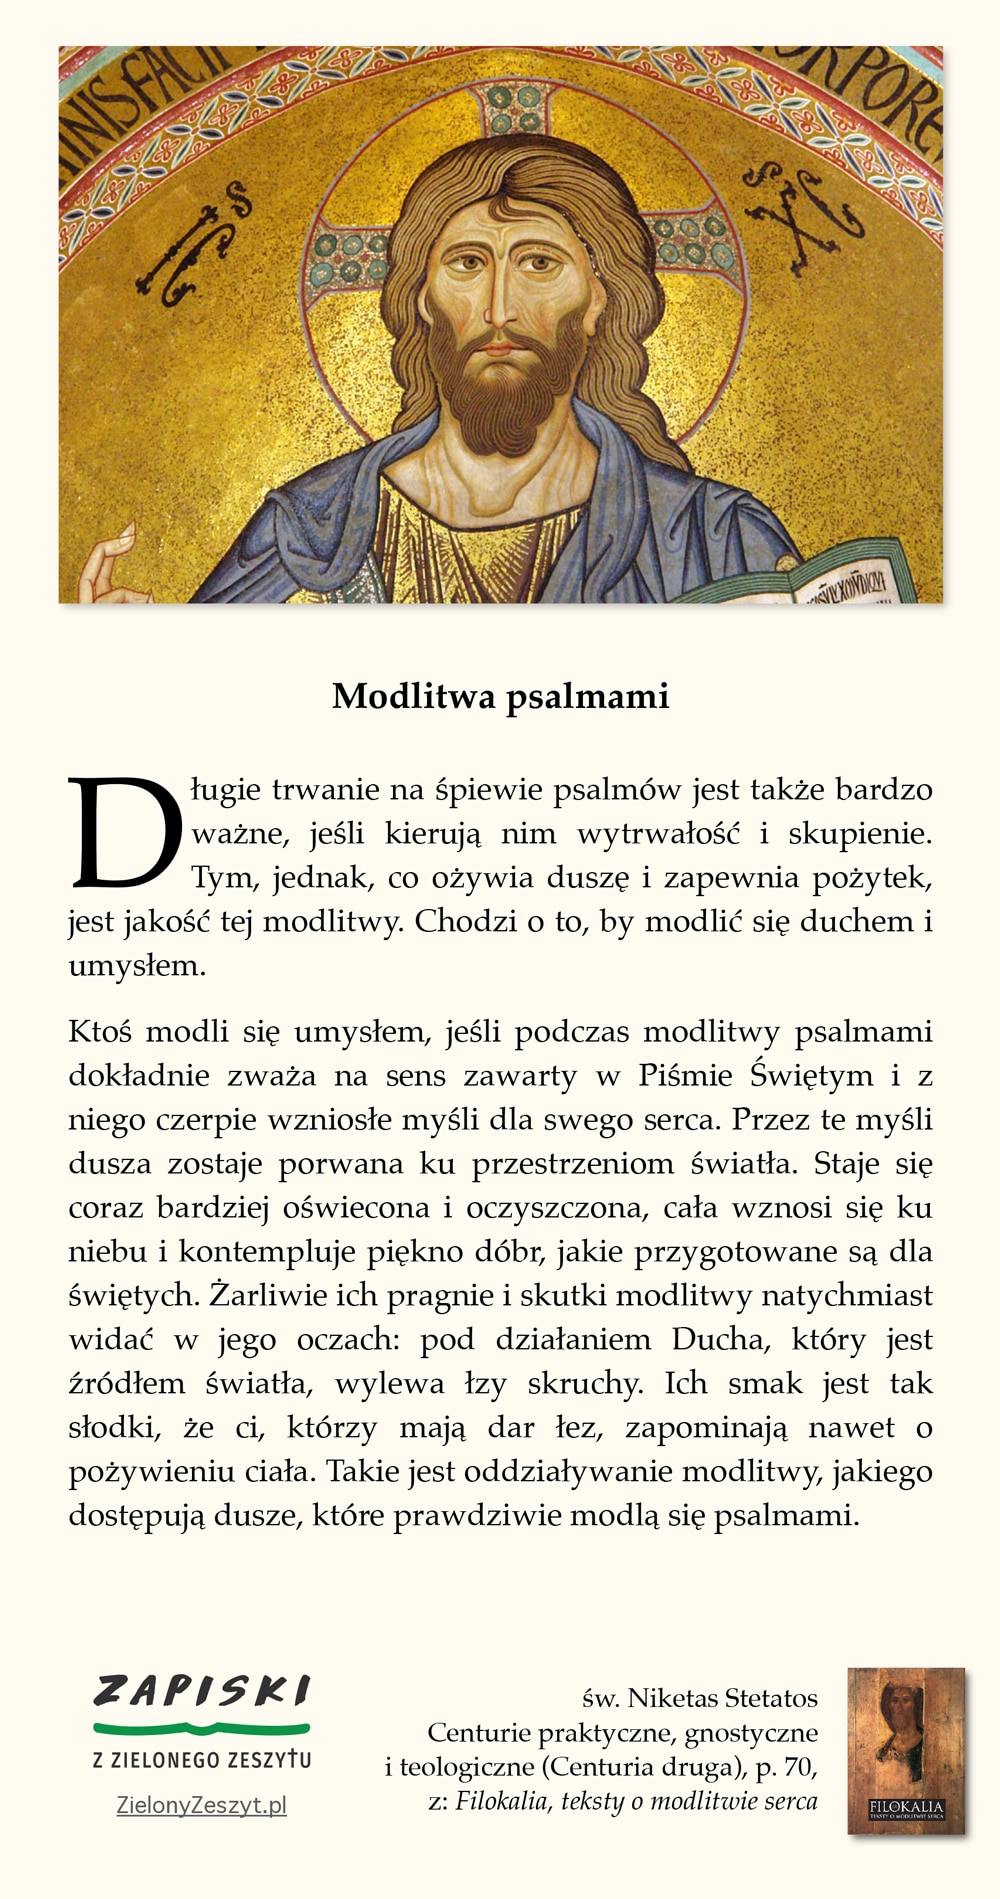 św. Niketas Stetatos, Centurie praktyczne, gnostyczne i teologiczne (Centuria druga), p. 70, z: Filokalia, teksty o modlitwie serca